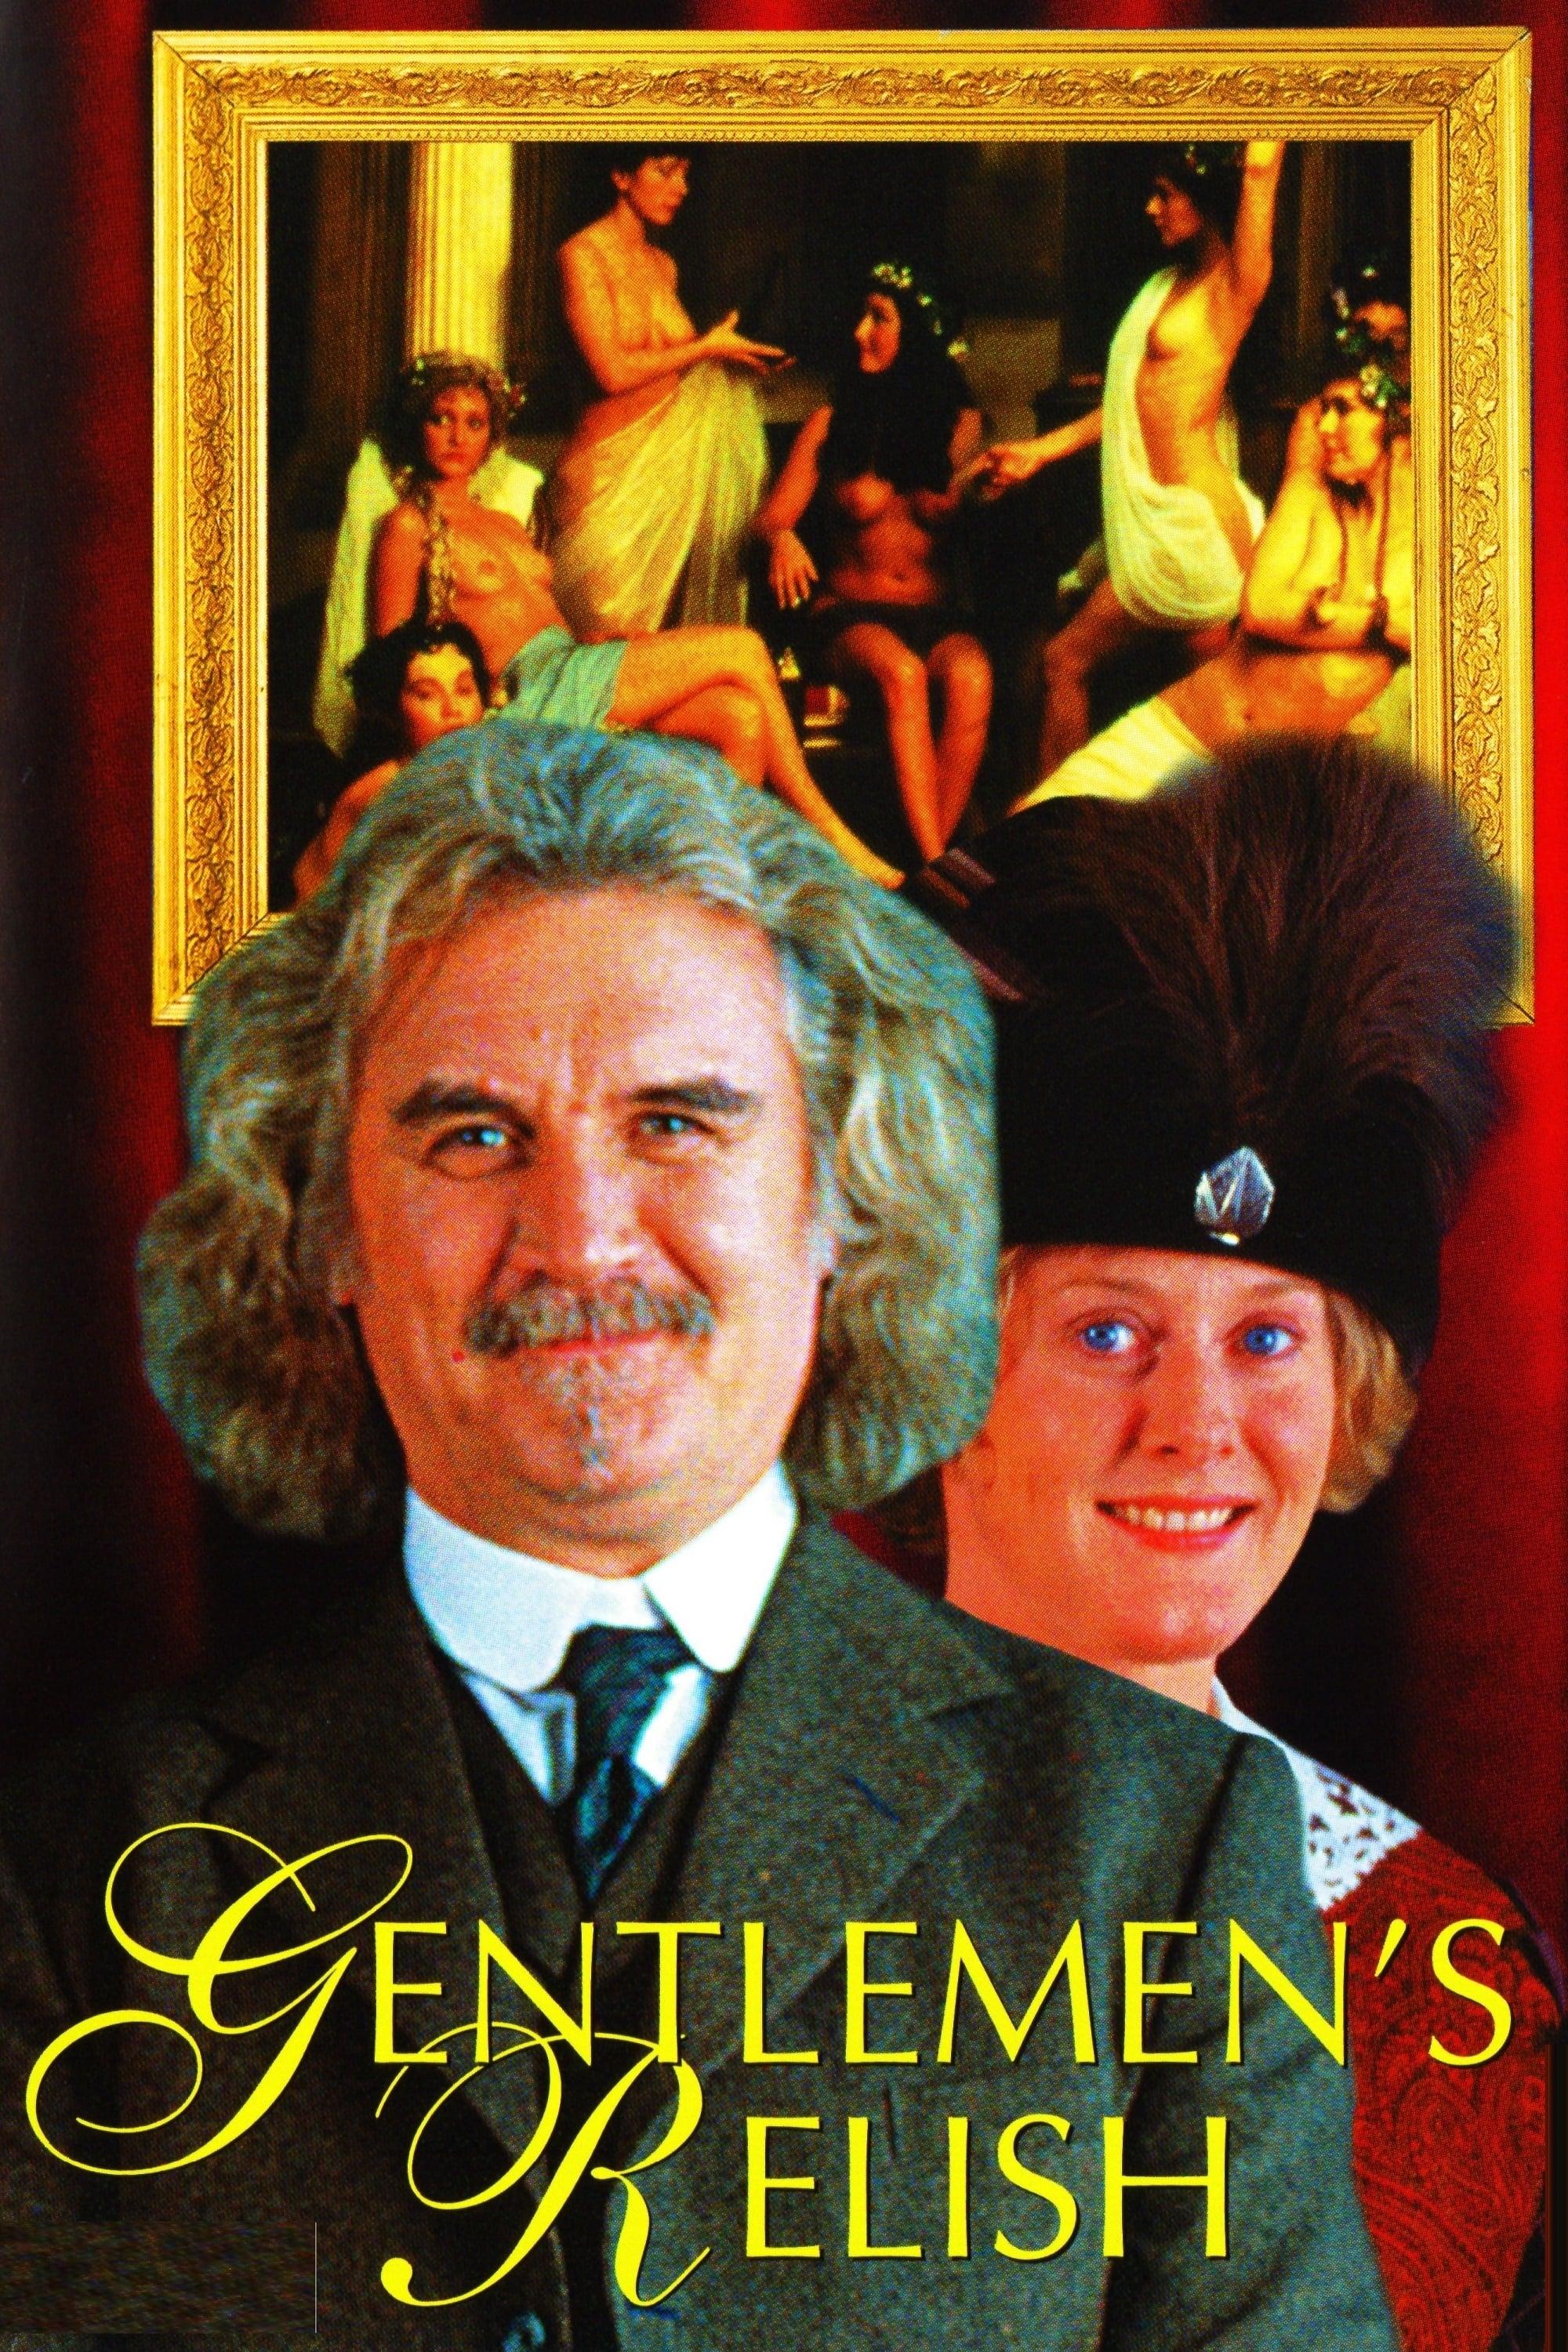 Gentlemen's Relish poster